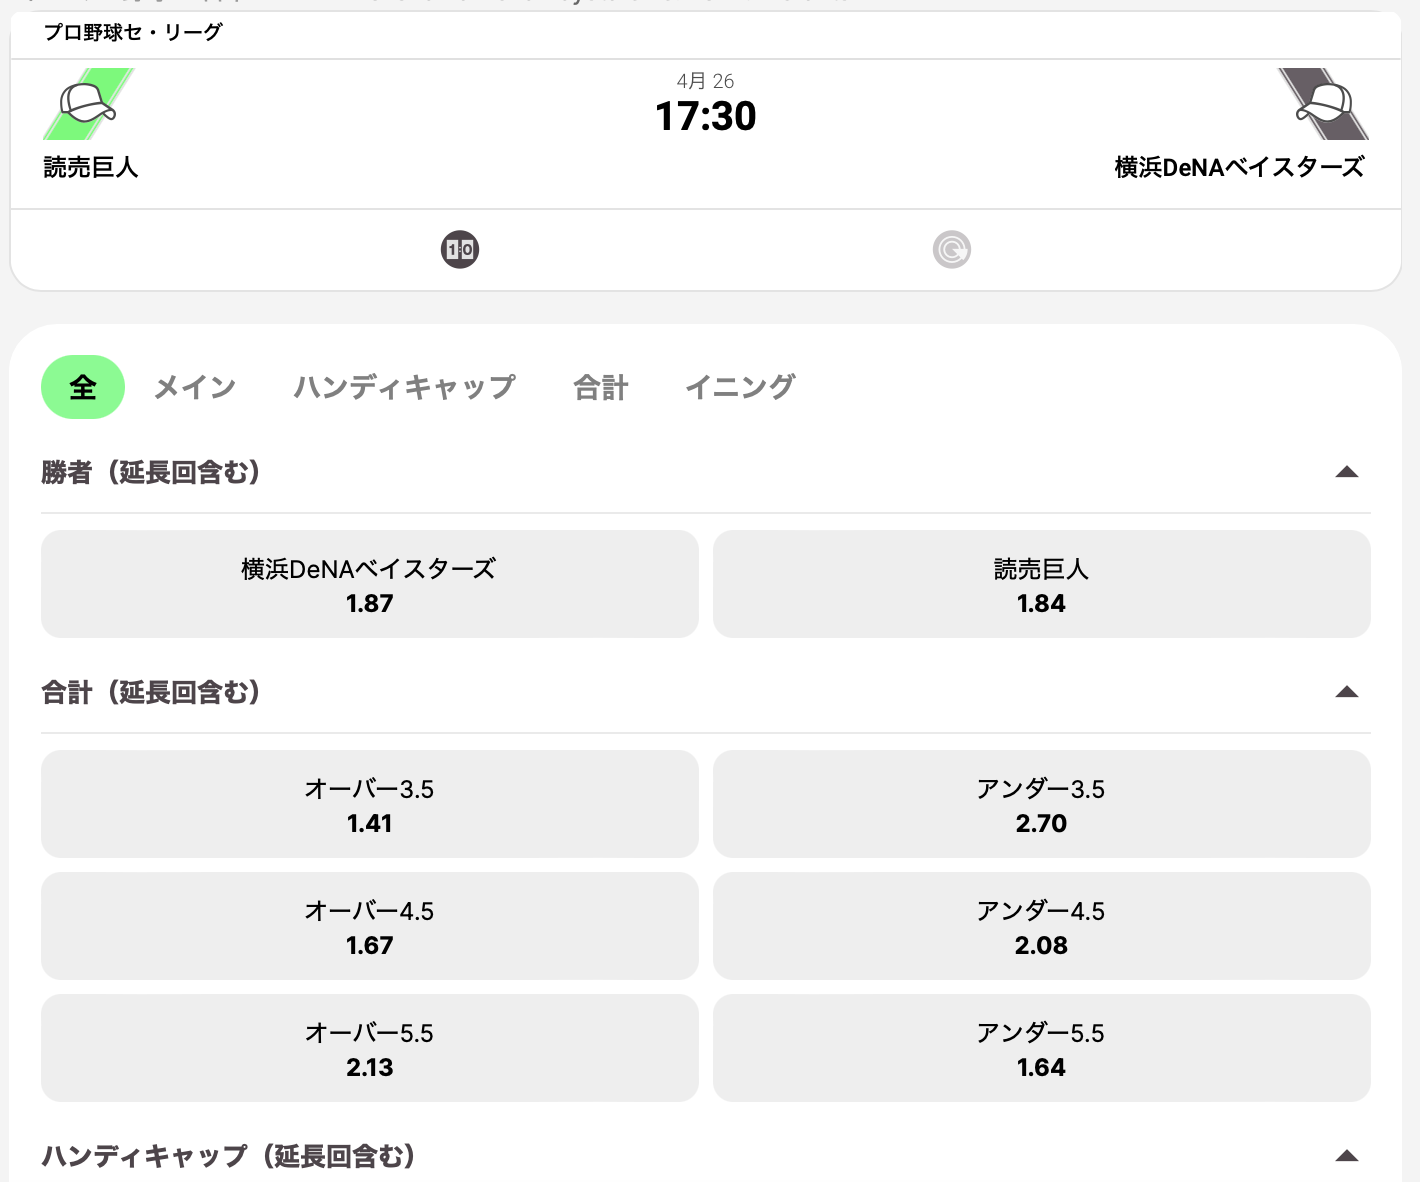 横浜DeNAベイスターズ対読売ジャイアンツ４回戦・ブックメーカー10betオッズ